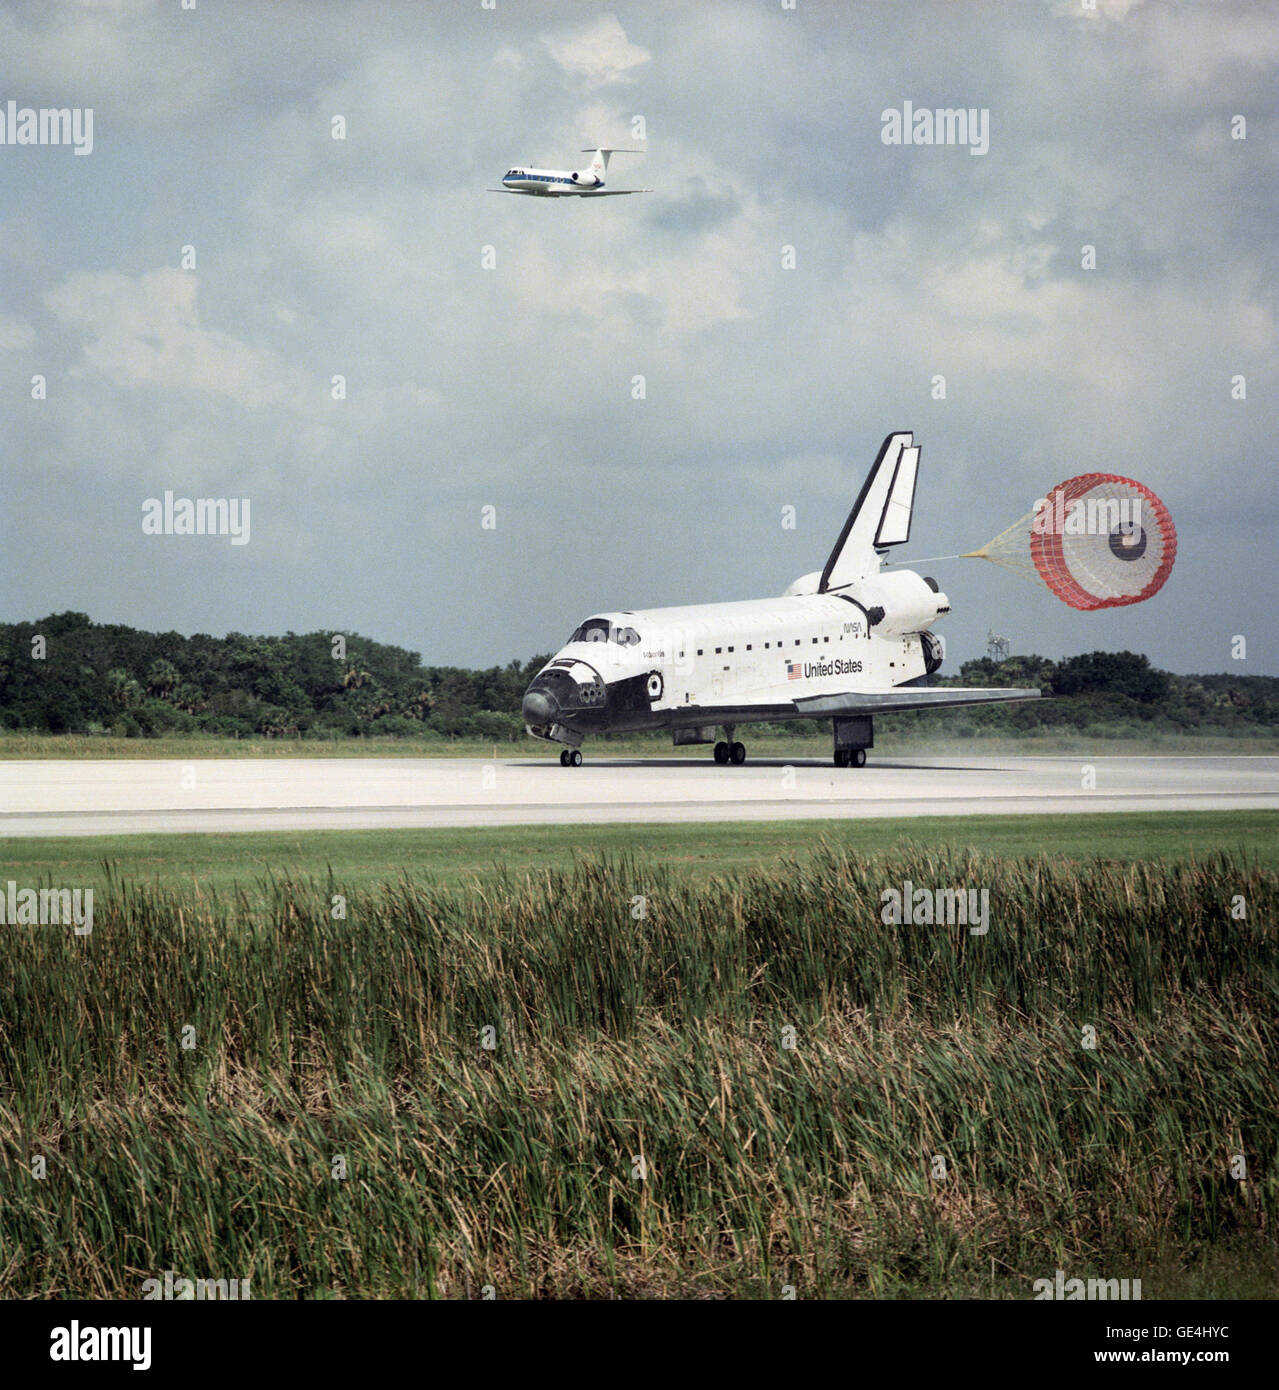 Space Shuttle Atlantis' STS-71 terre di missione presso il Kennedy Space Center il 7 luglio 1995. STS-71 è stata la prima missione shuttle per dock con il russo della stazione spaziale Mir. Immagine # : STS071-S-070 Data: Luglio 7, 1995 Foto Stock